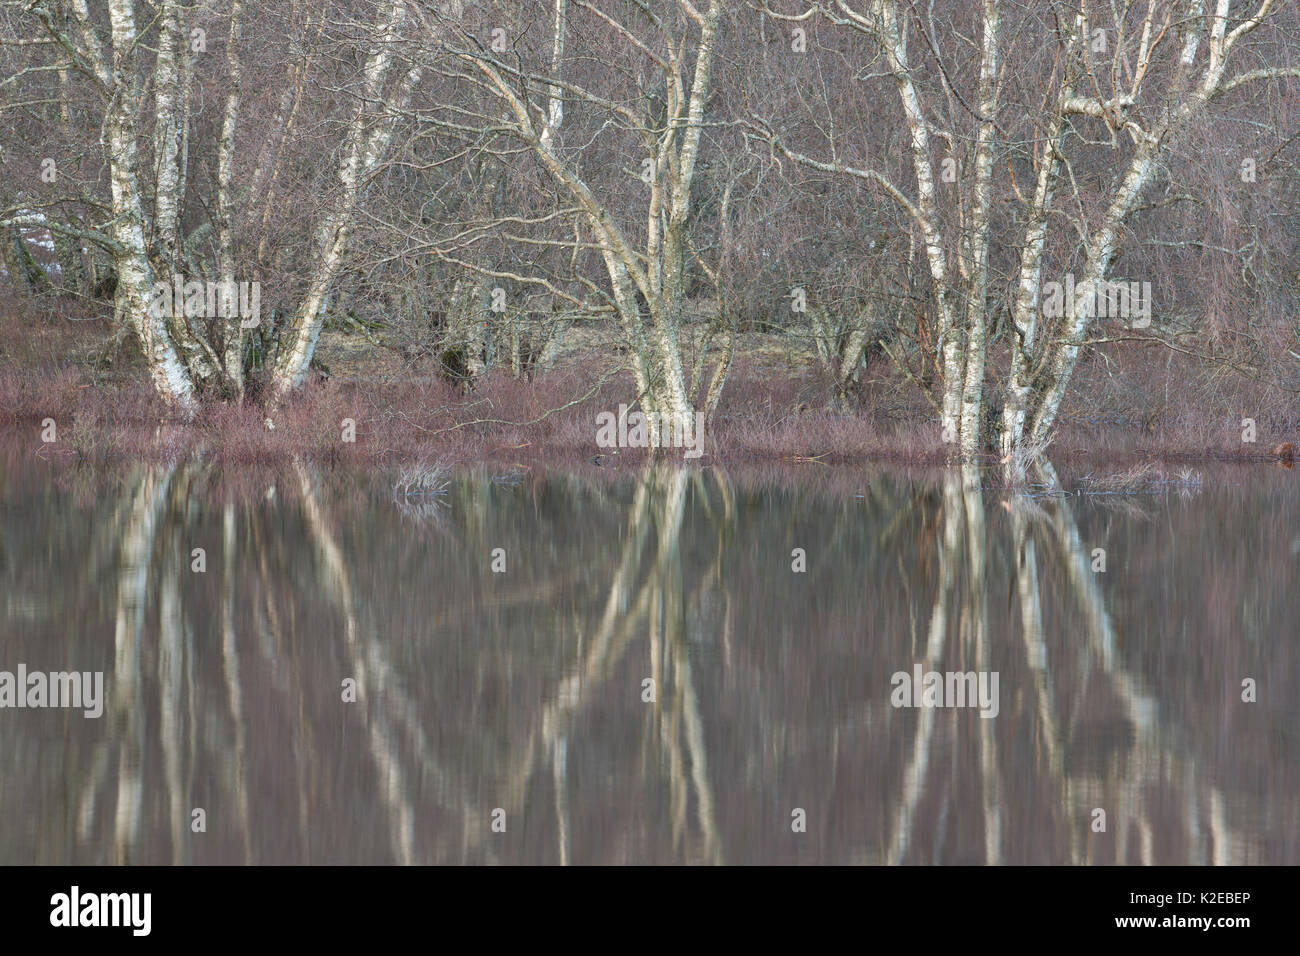 Birke (Betula pendula) und Erle (Alnus glutinosa) Woodland unter Überschwemmungsgebiet Überlauf eingetaucht, Fluss Spey, Cairngorms National Park, Schottland, UK, Dezember 2013. Stockfoto